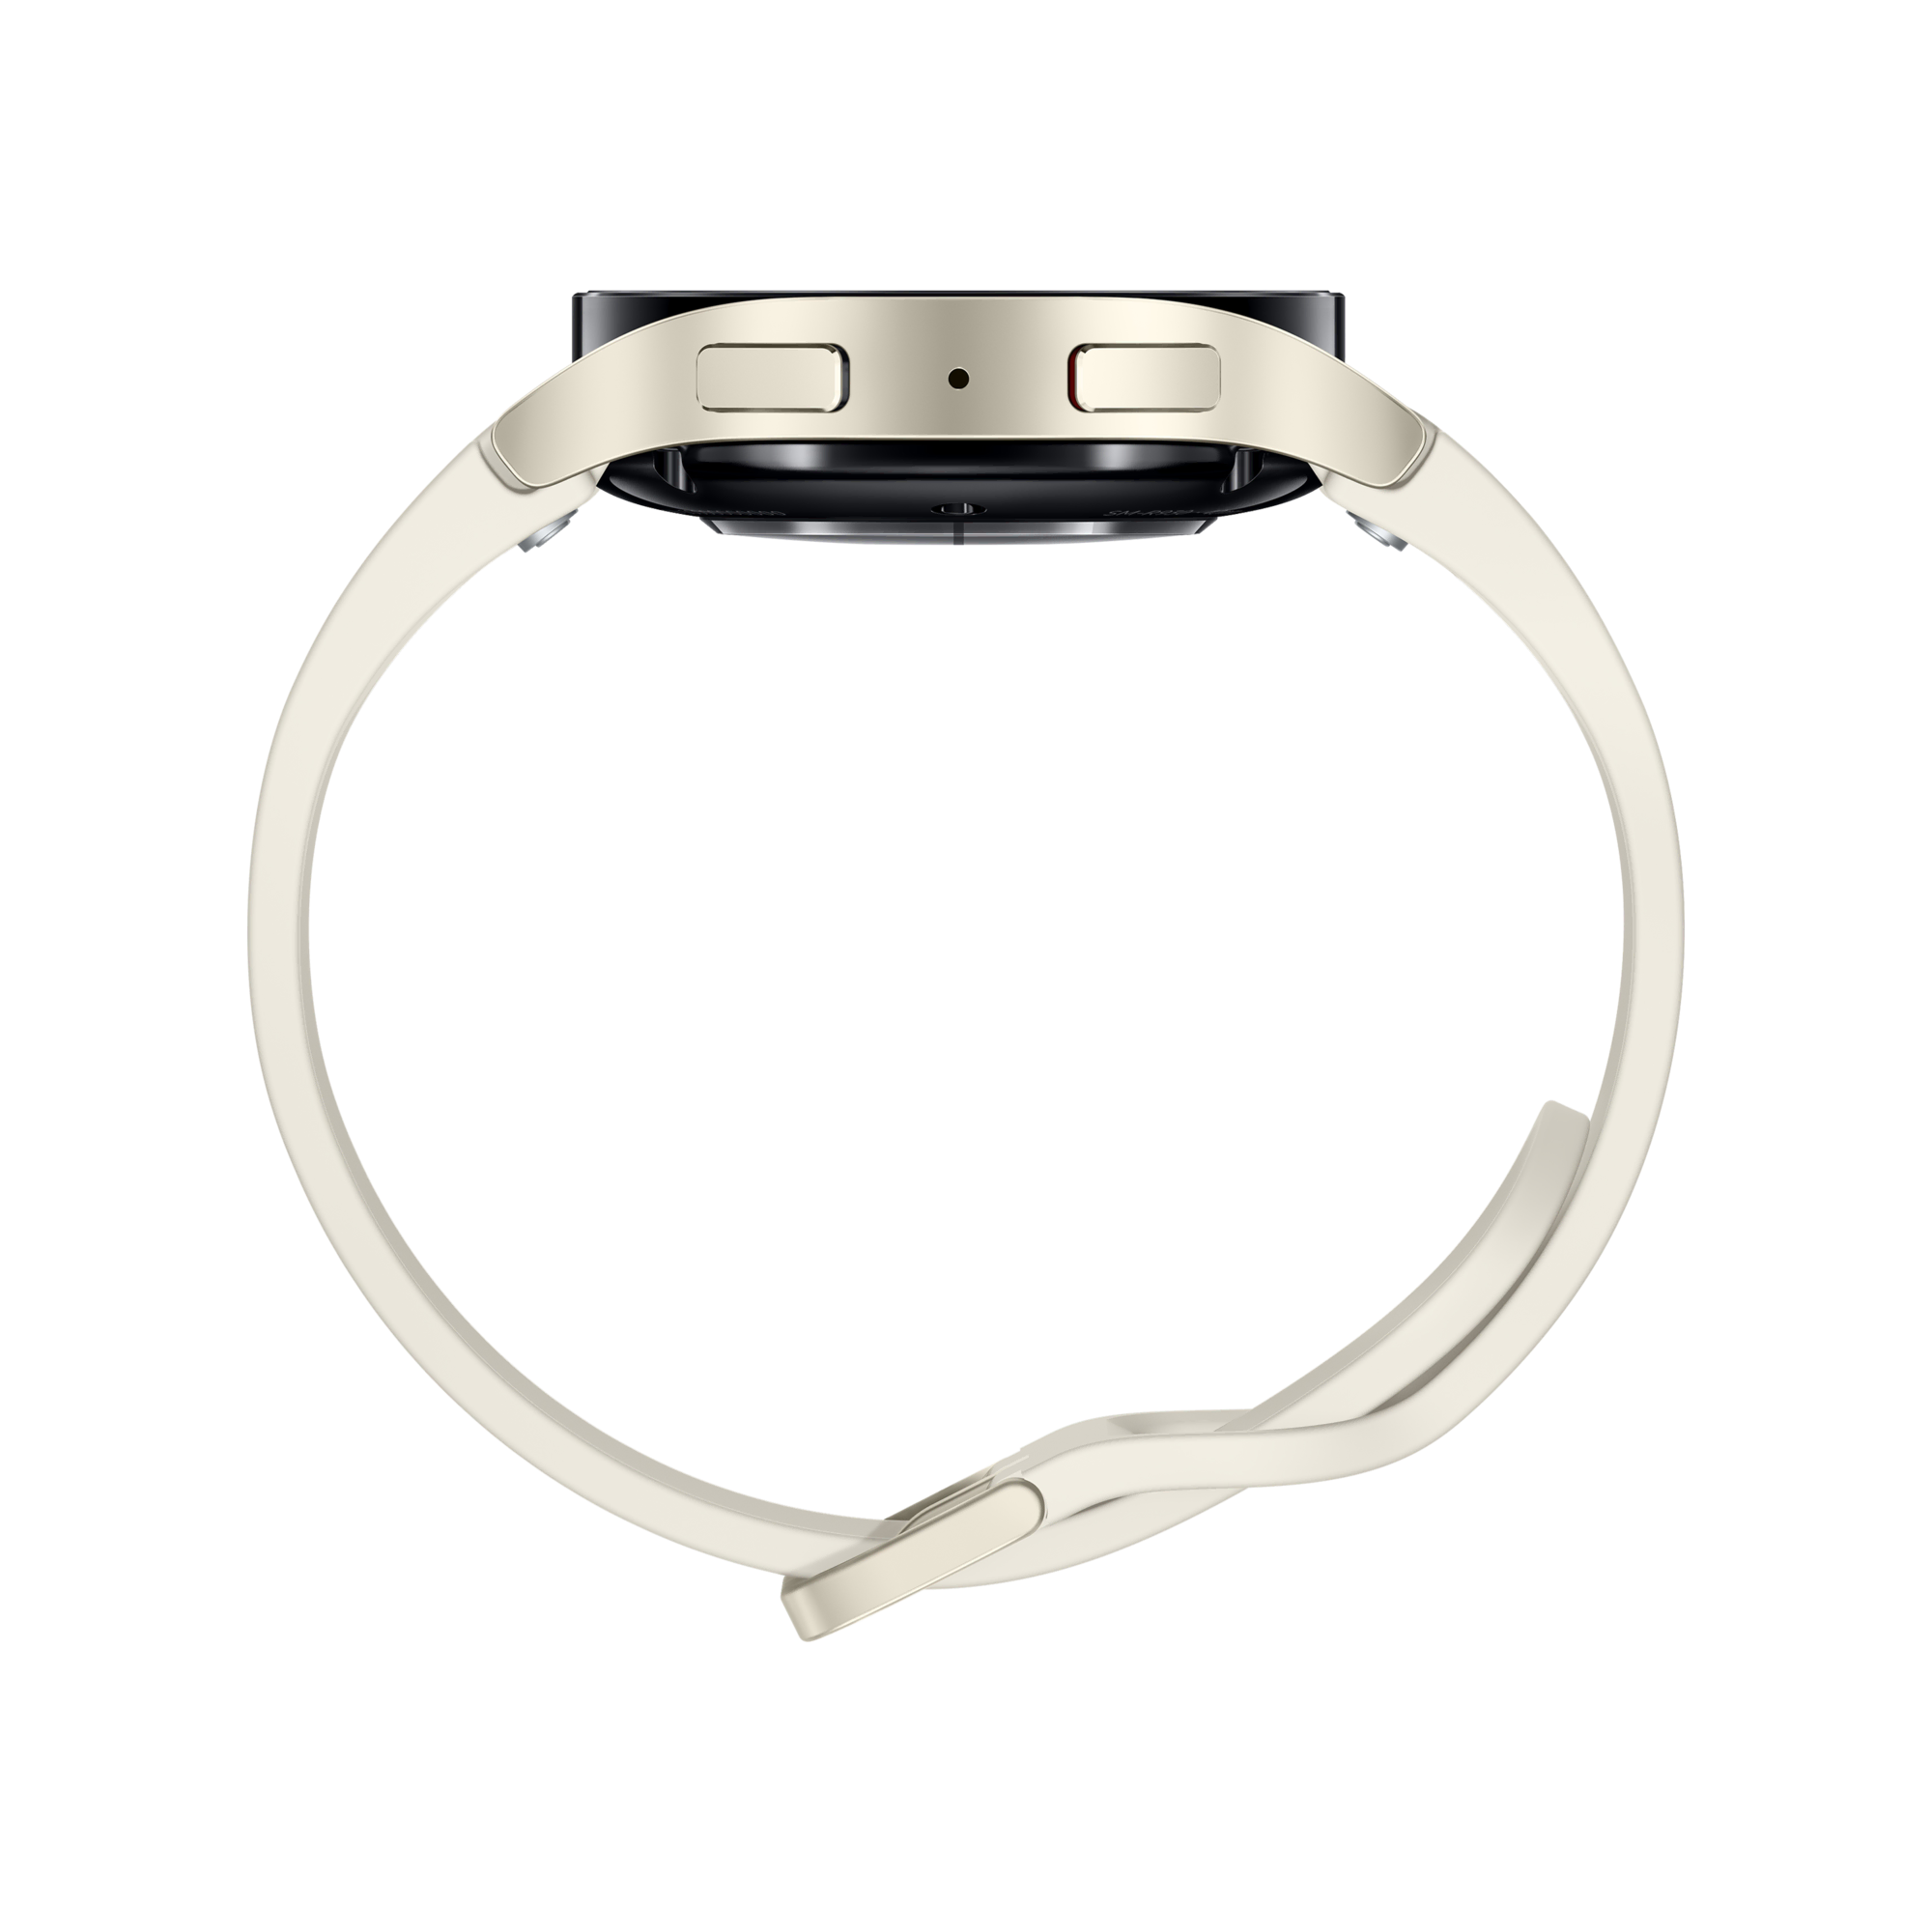 SAMSUNG Watch 6 (40mm) Krem Akıllı Saat